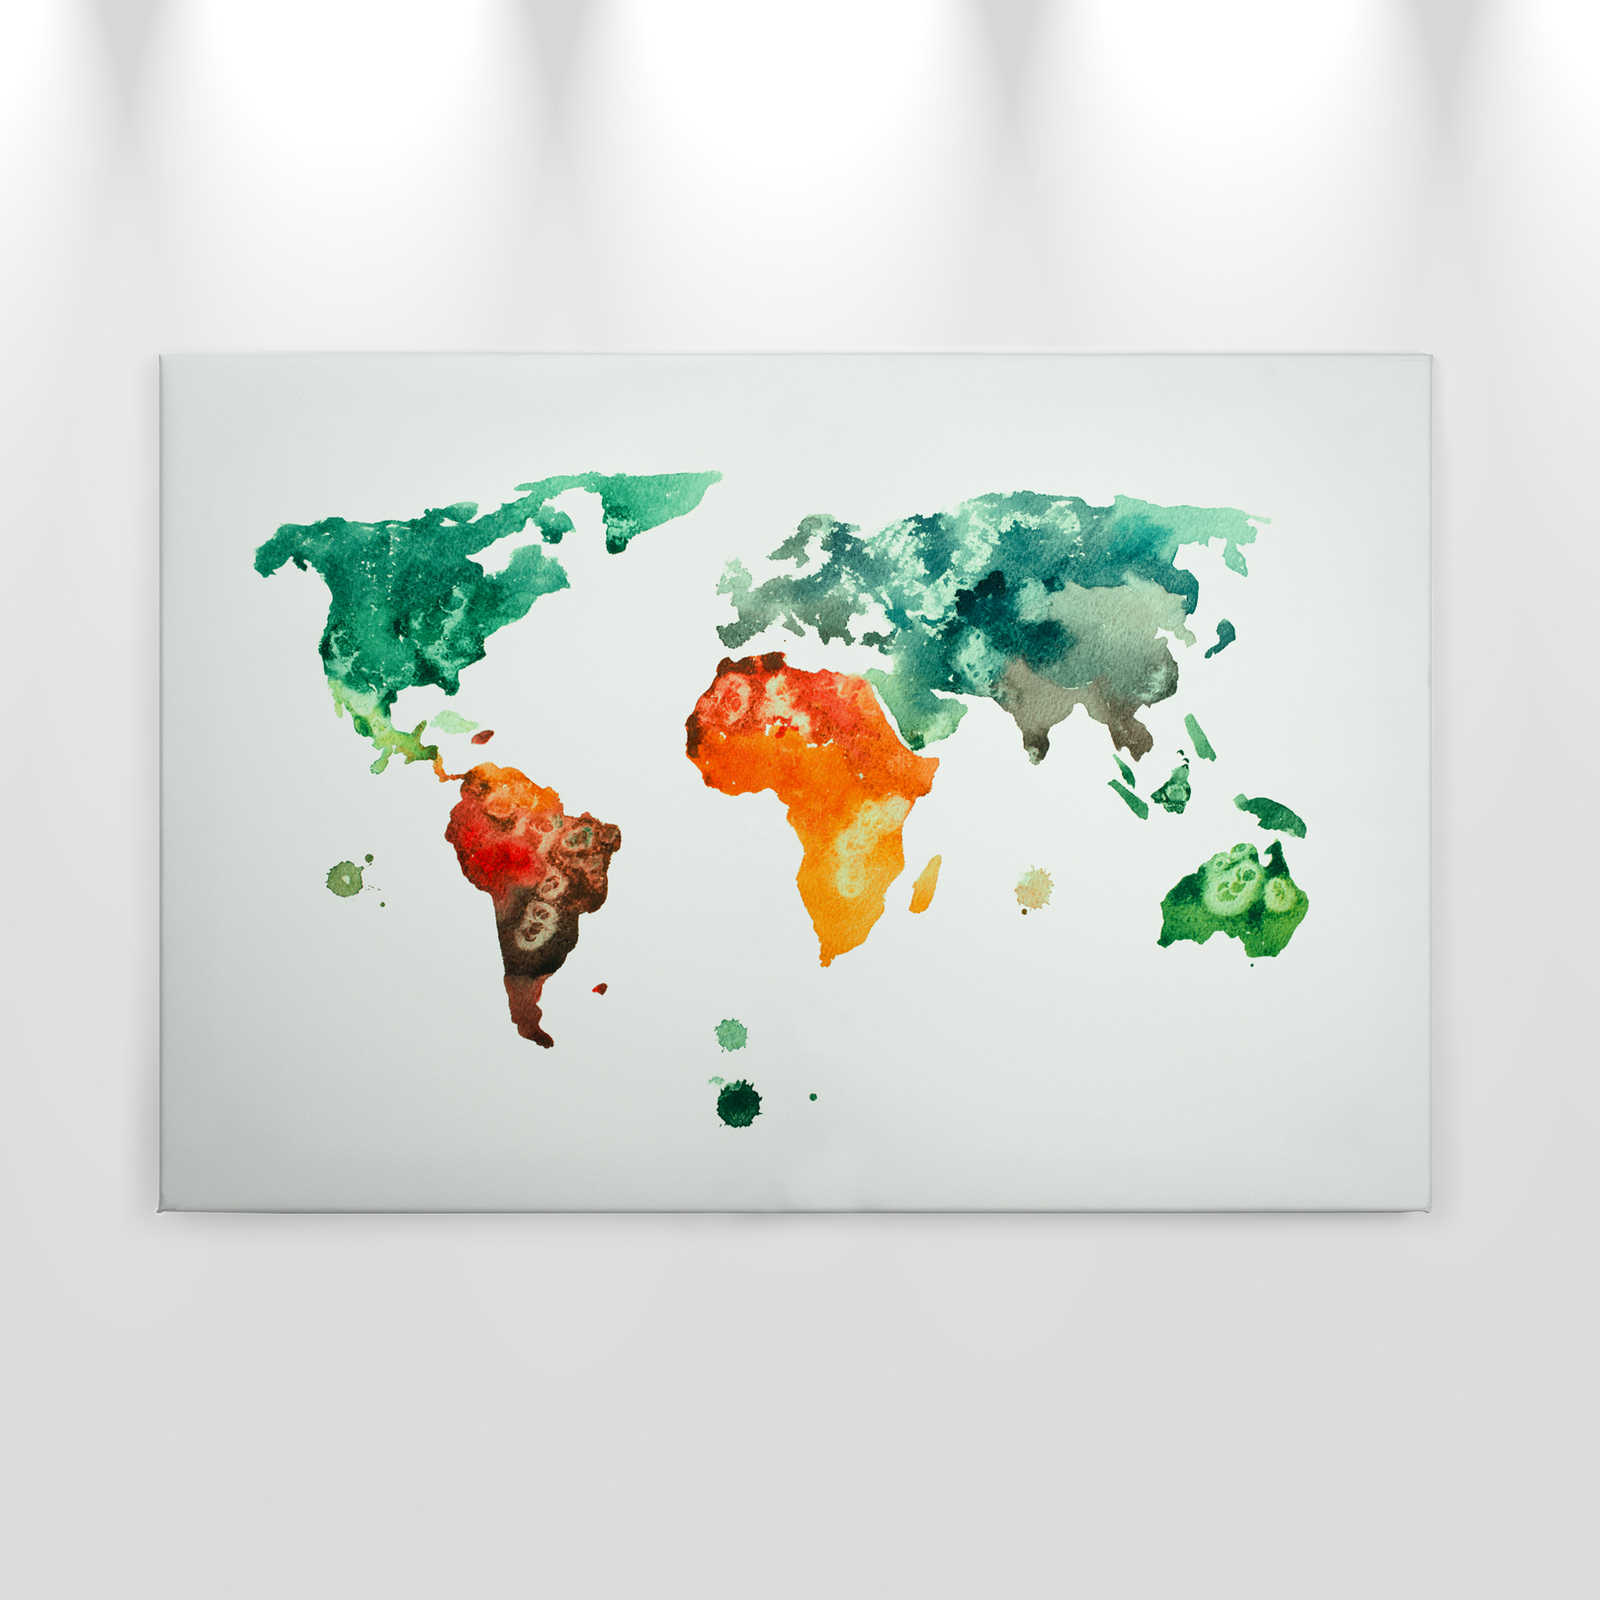             Mappa del mondo su tela acquerellata - 0,90 m x 0,60 m
        